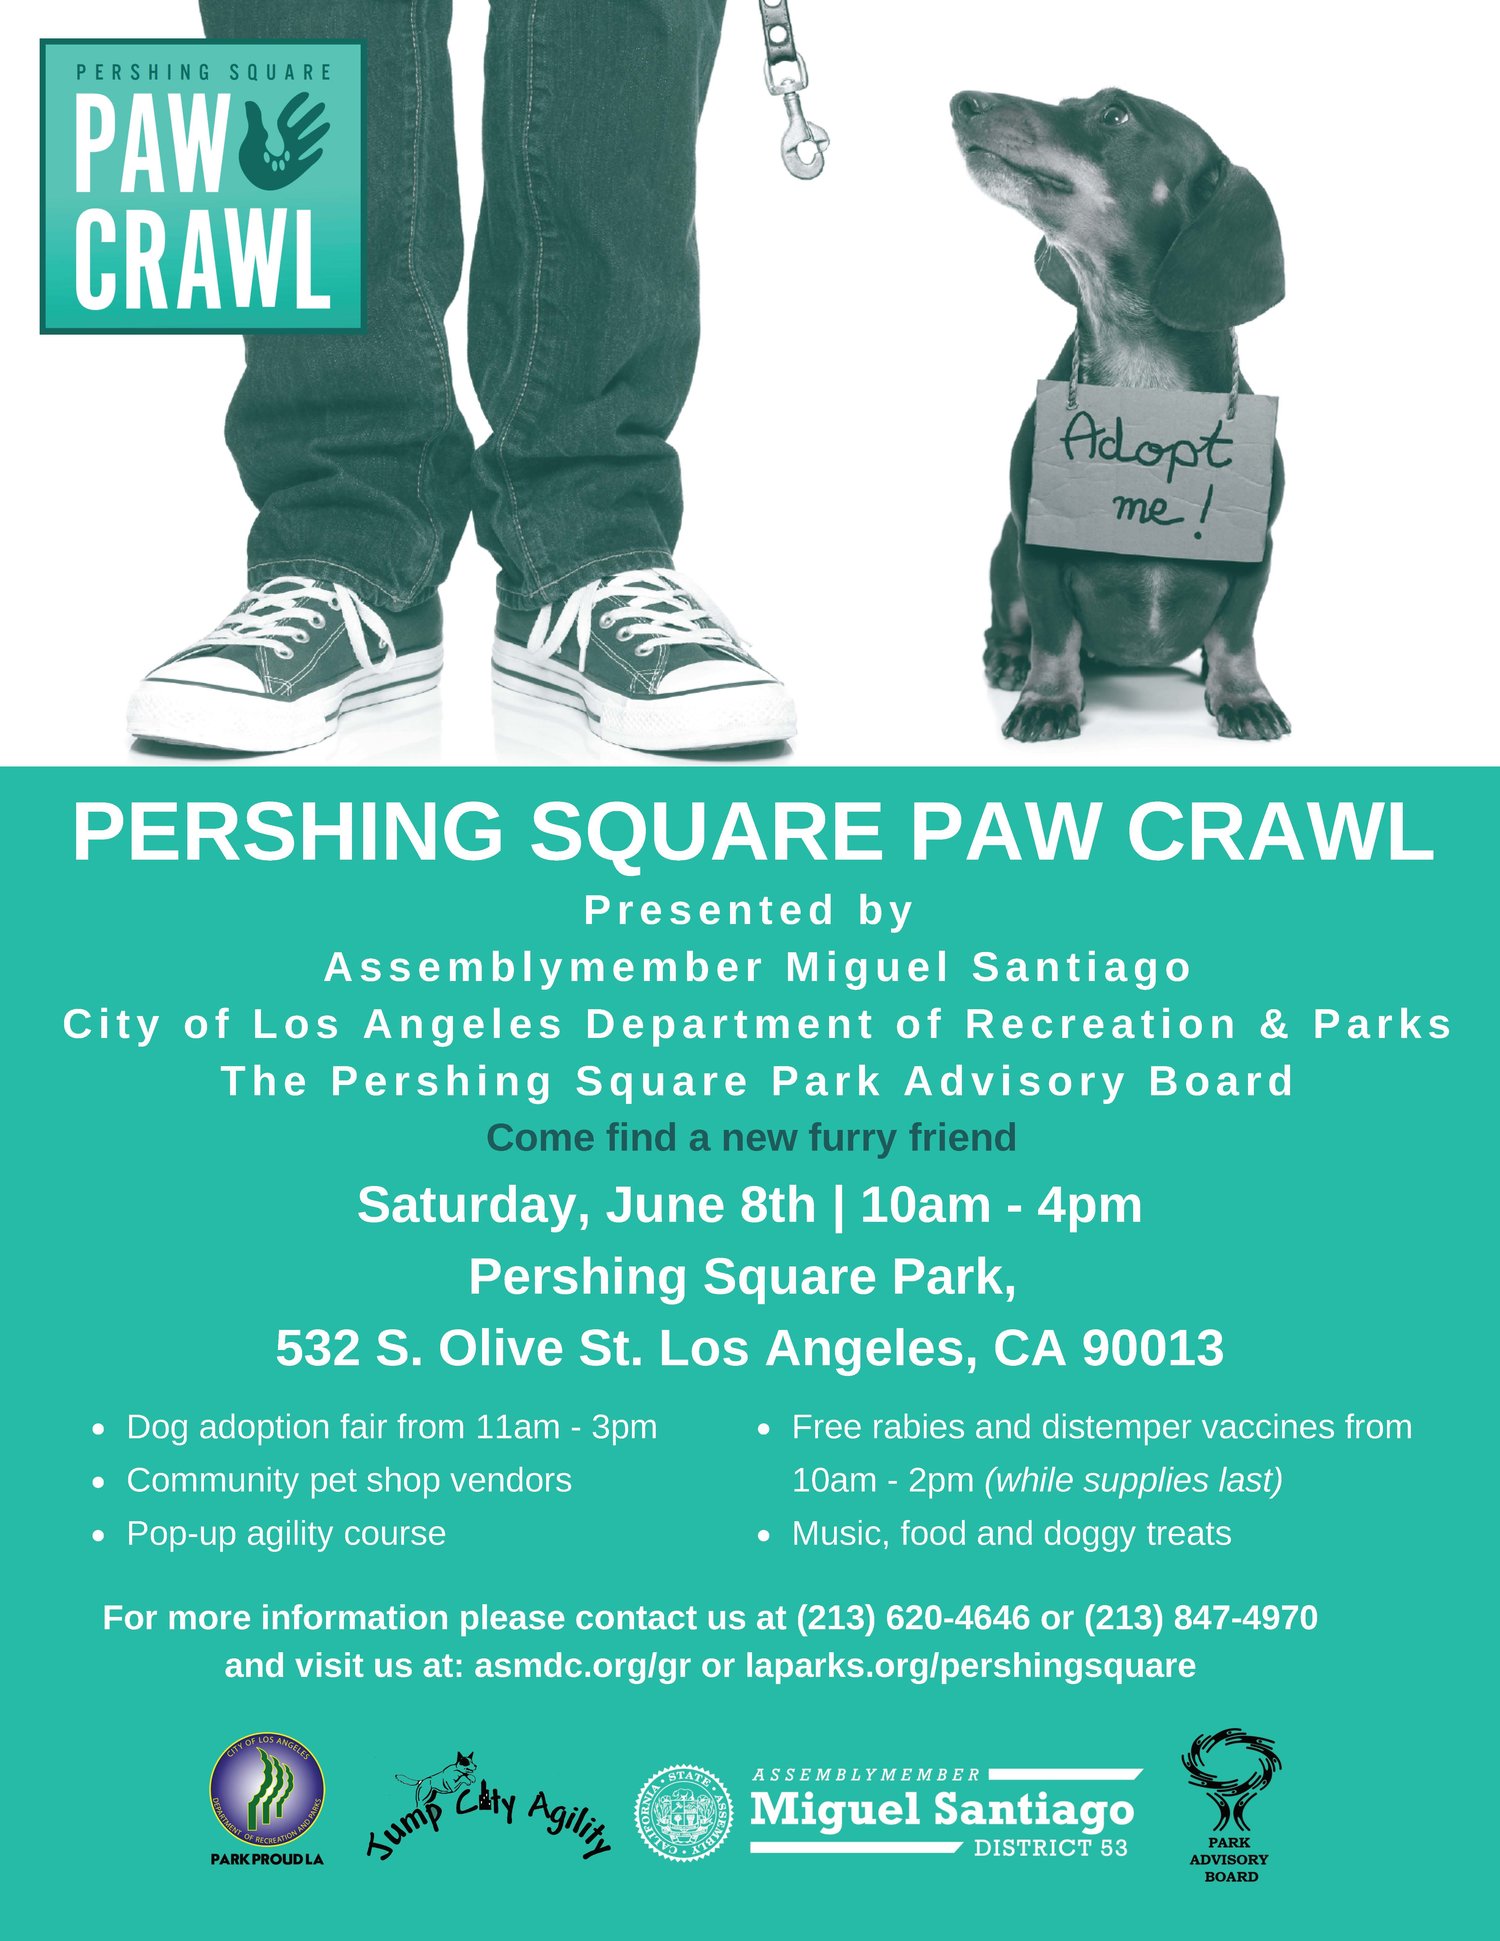 Pershing Square Paw Crawl